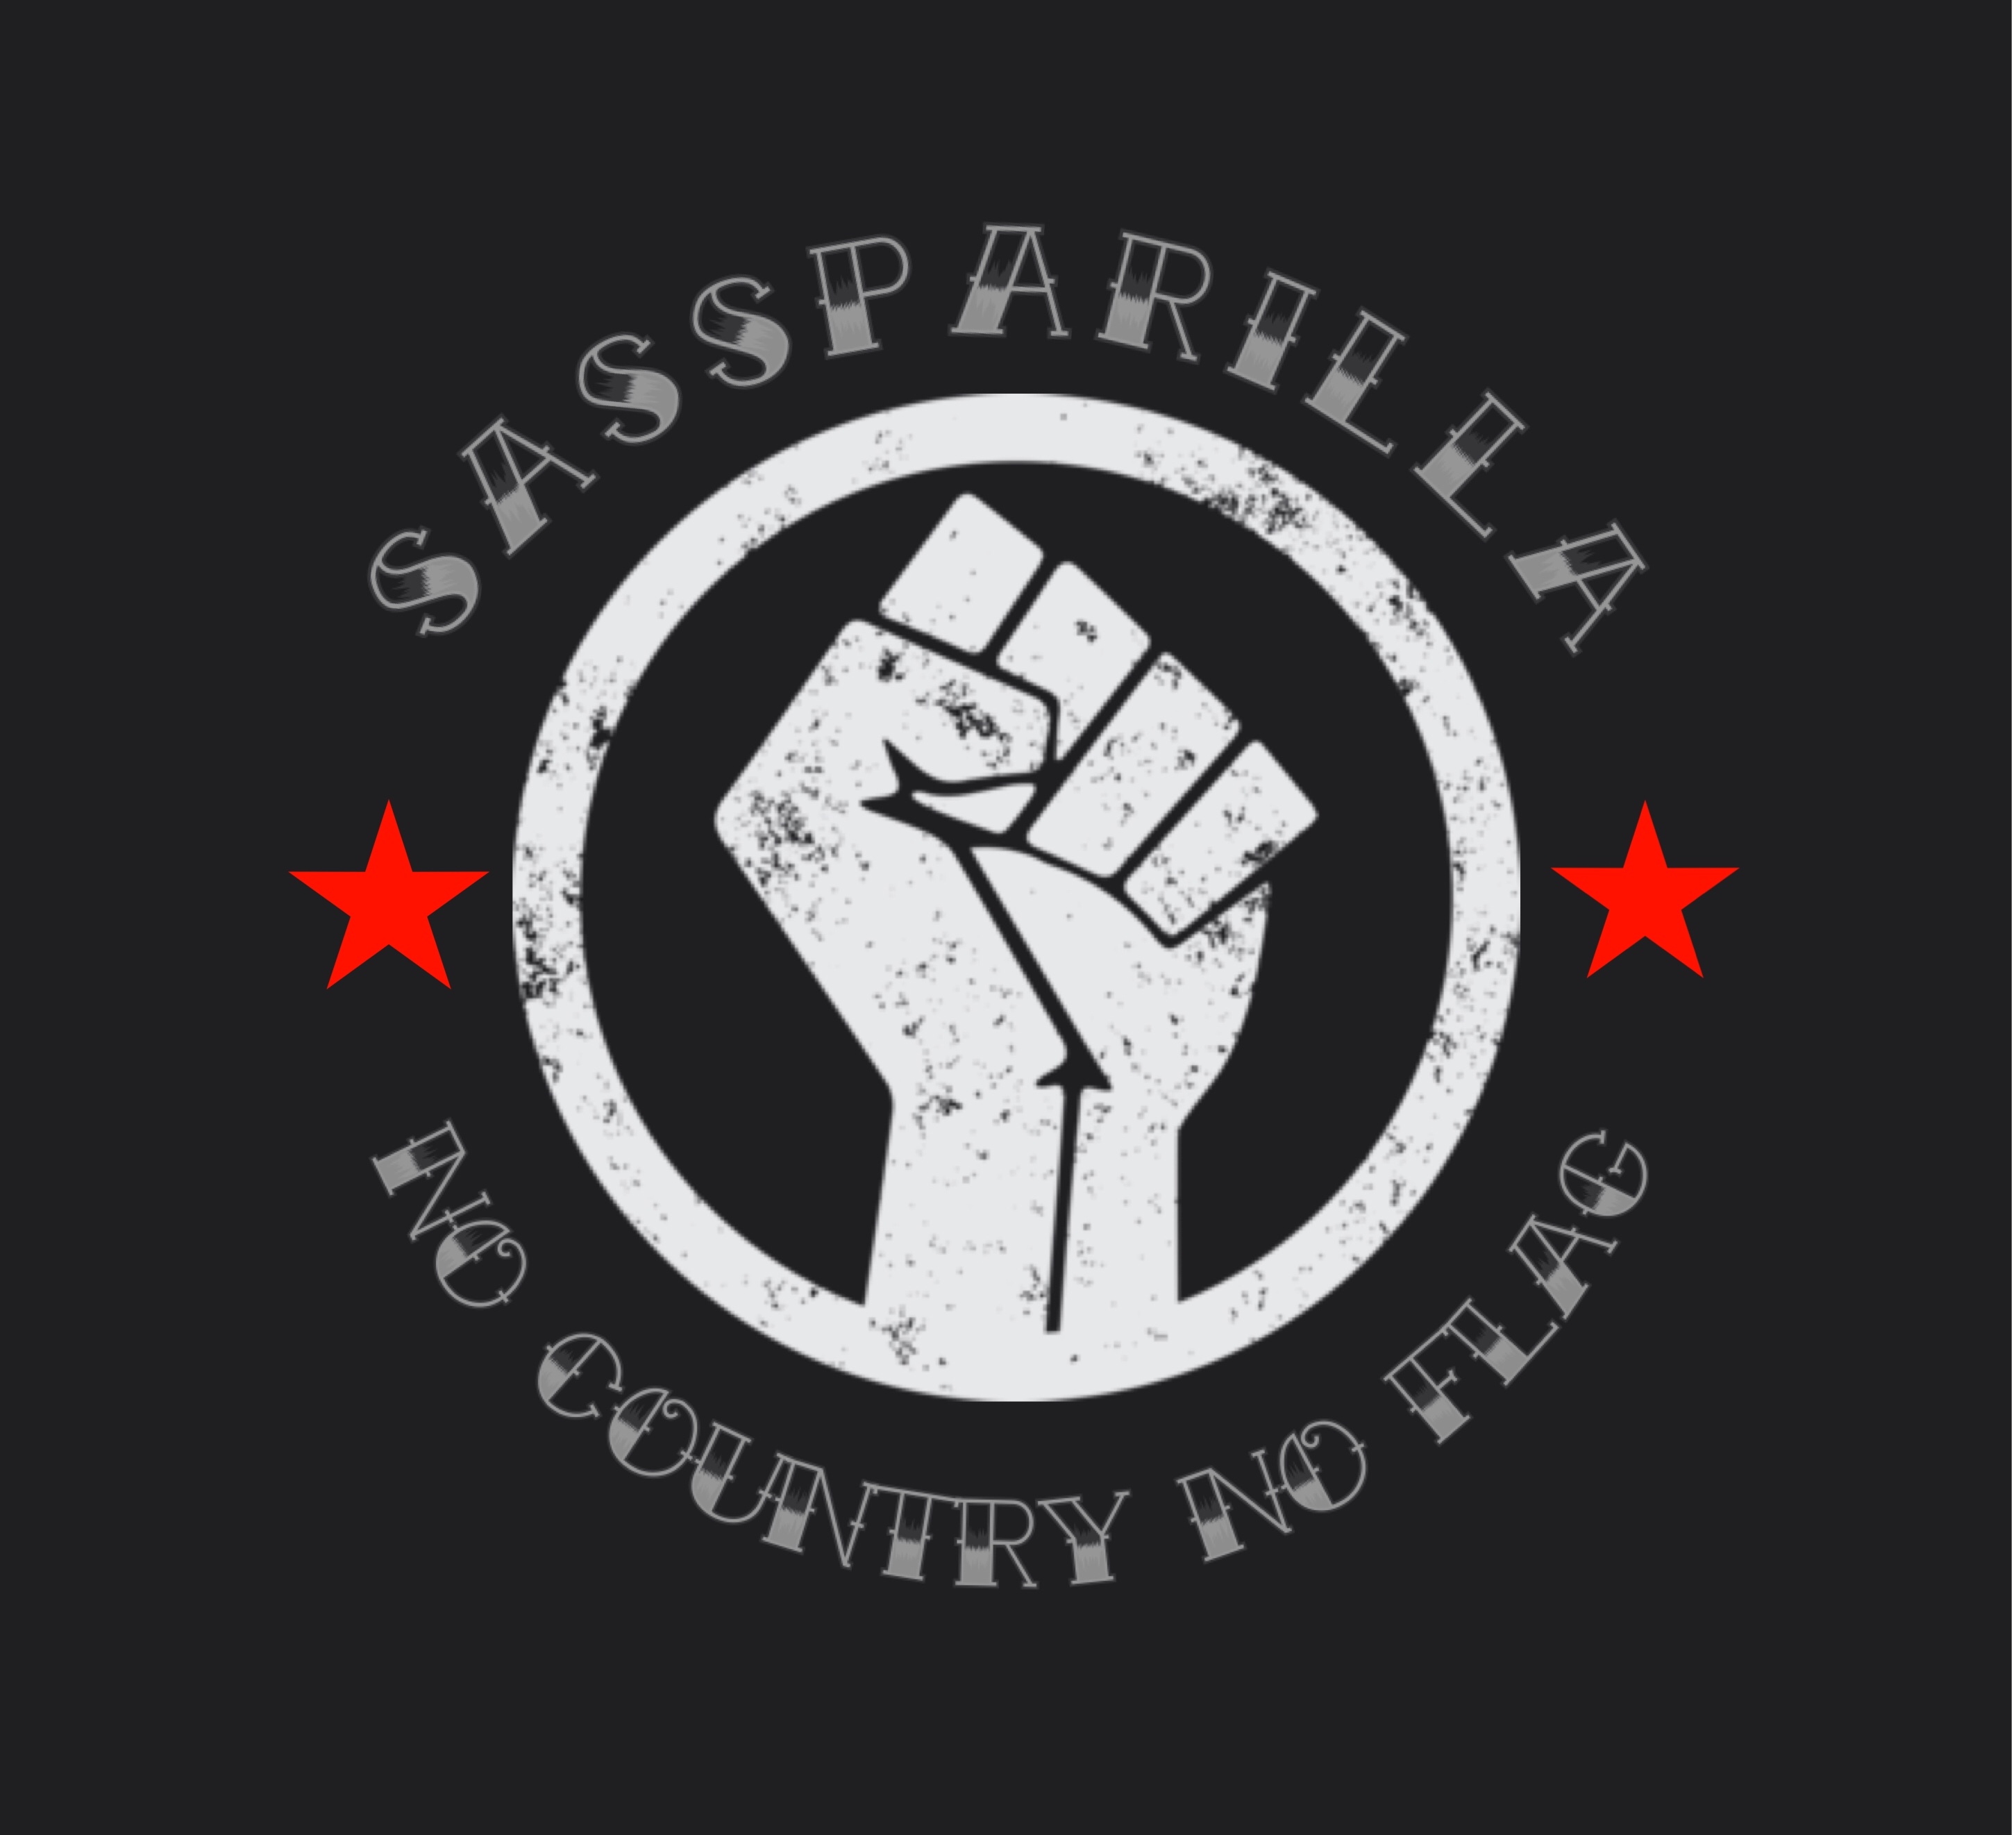 (c) Sassparilla.info